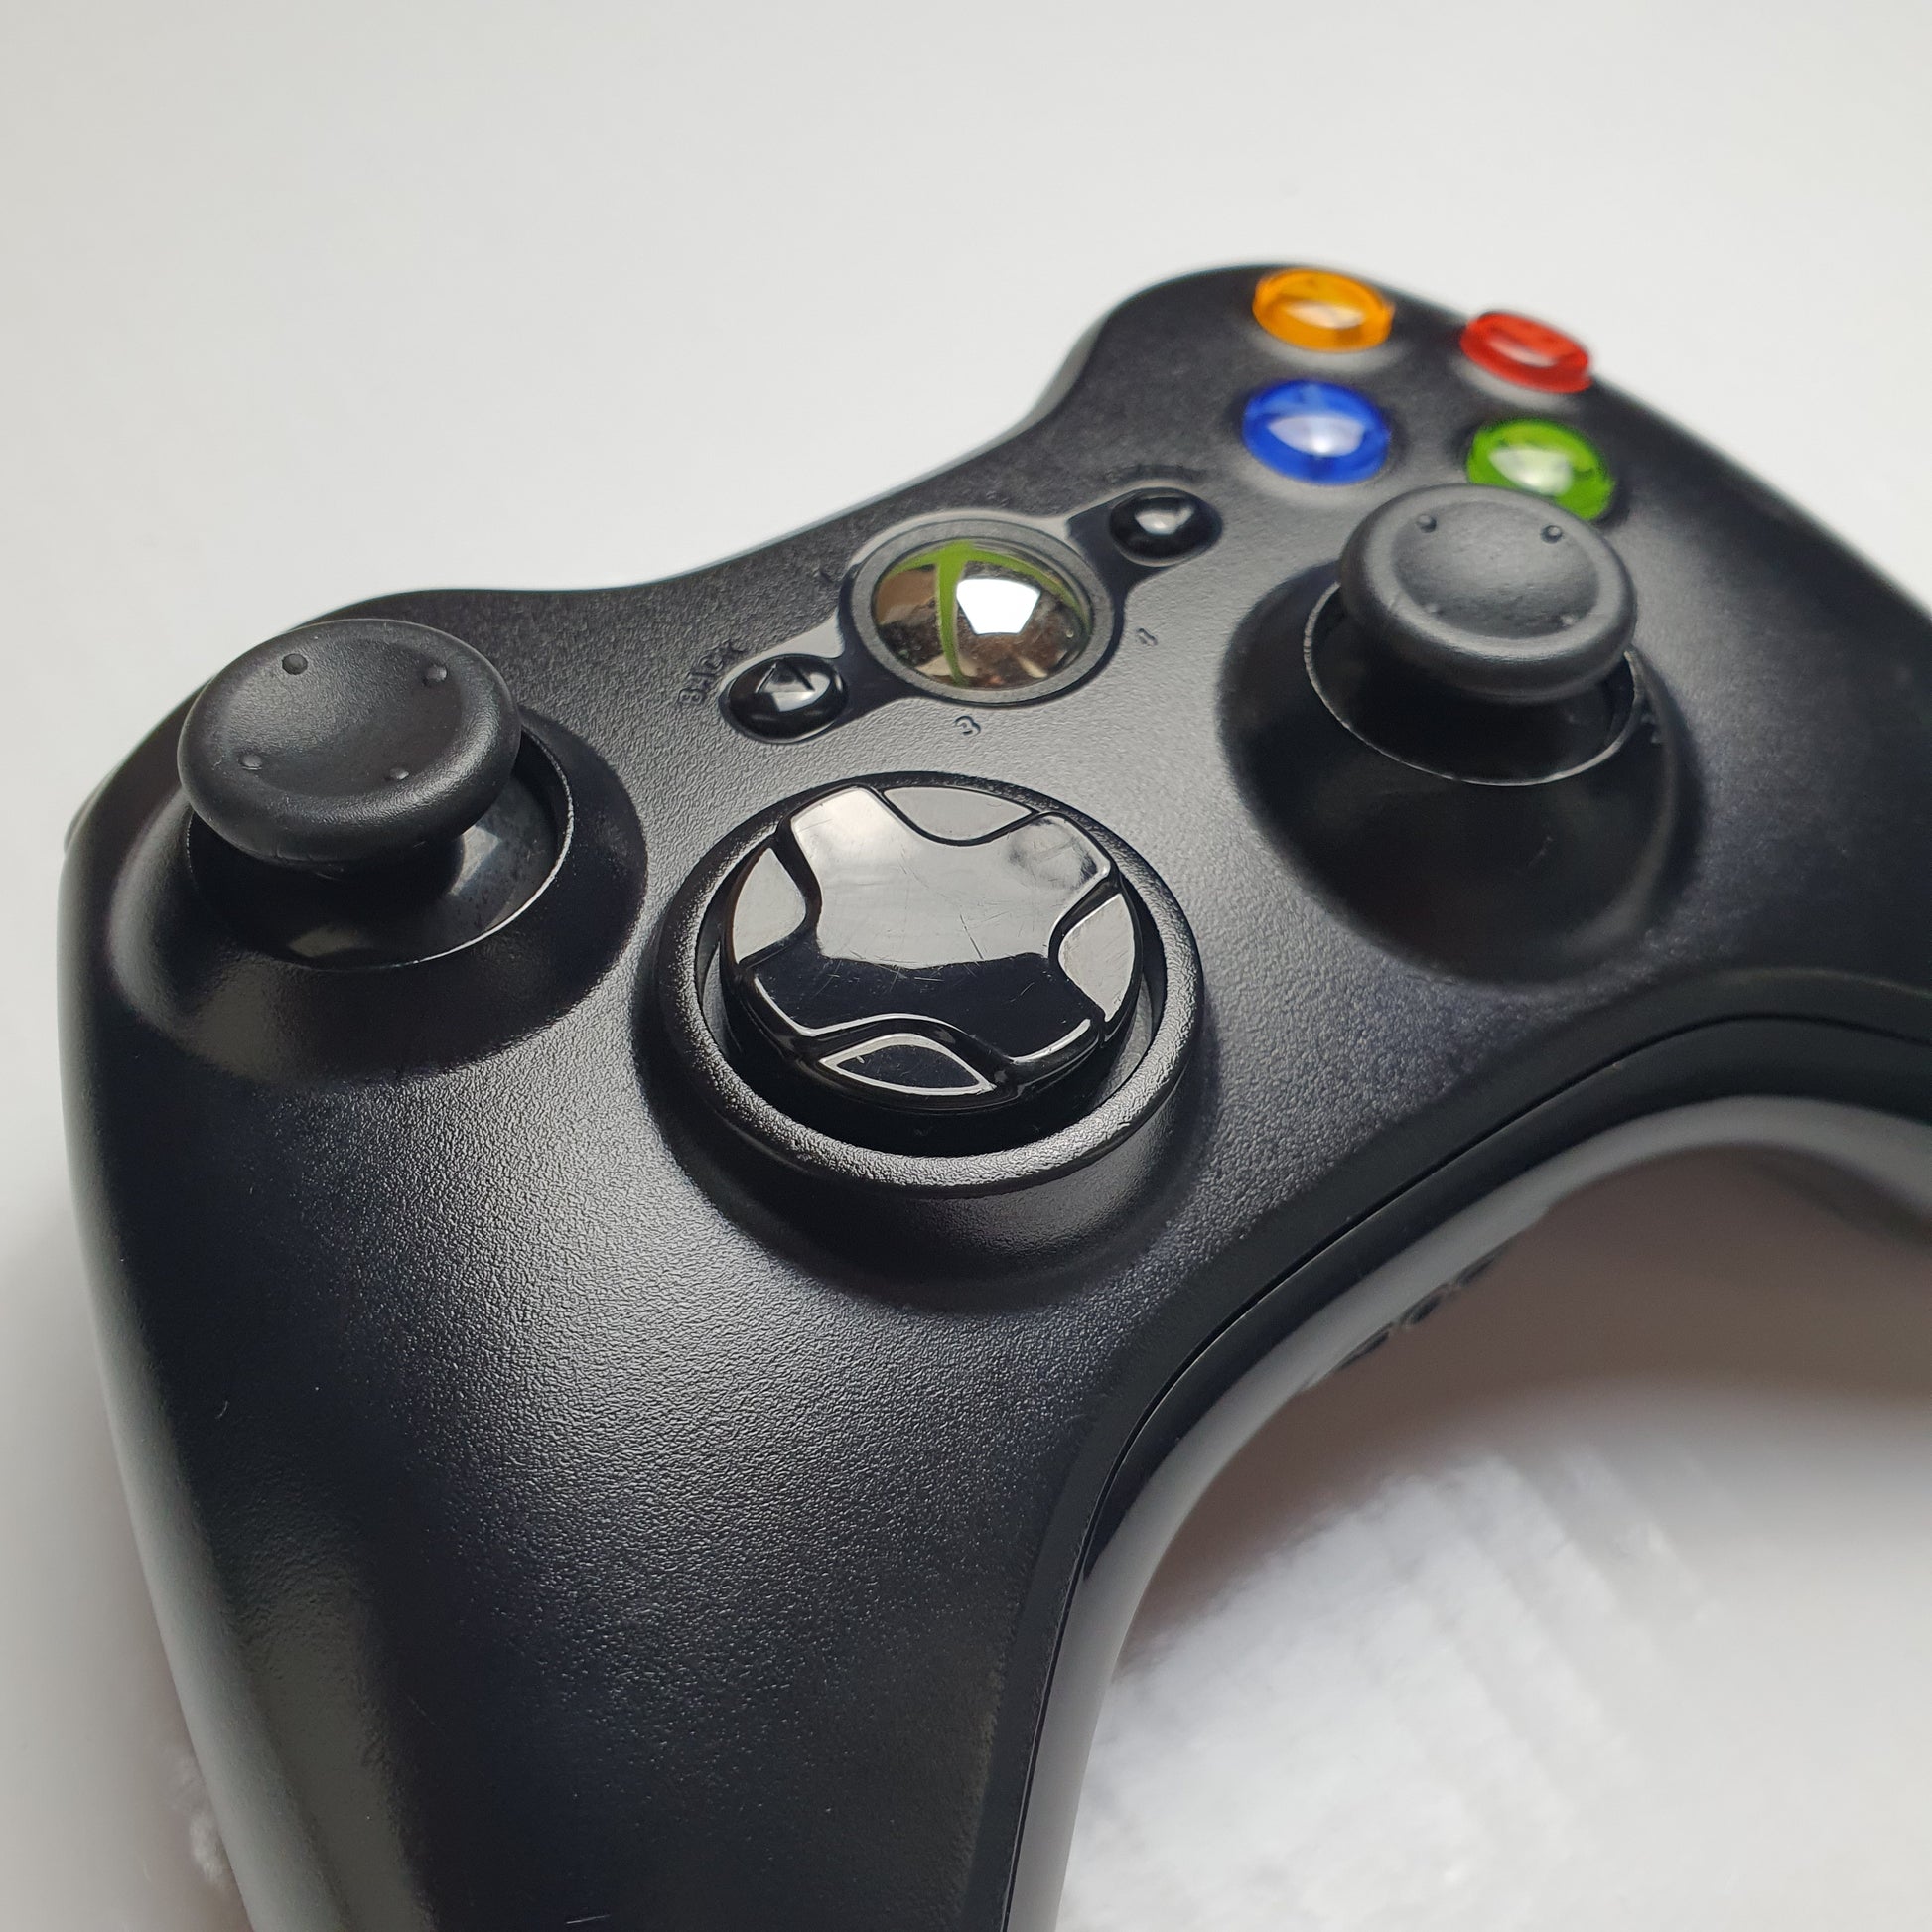 Xbox 360 S Controller